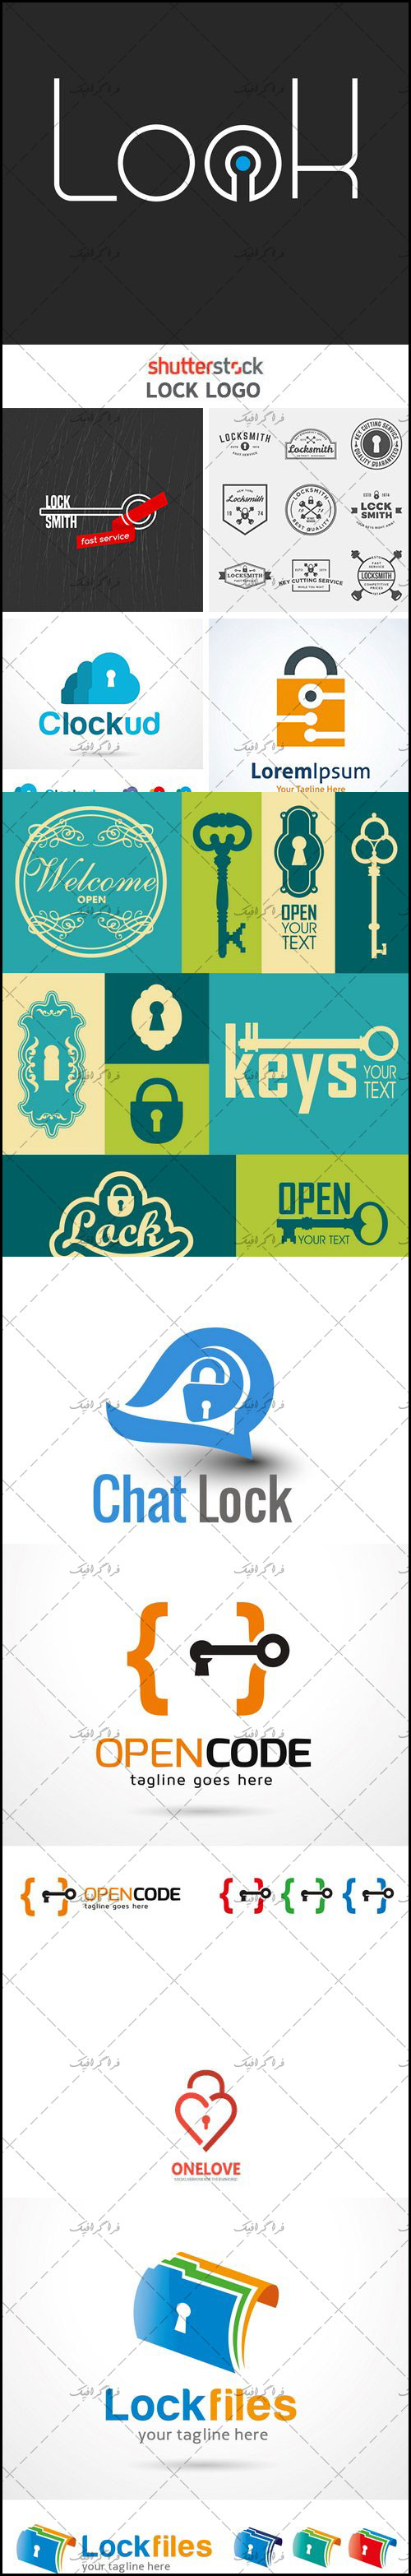 دانلود لوگو های قفل - Lock Logos